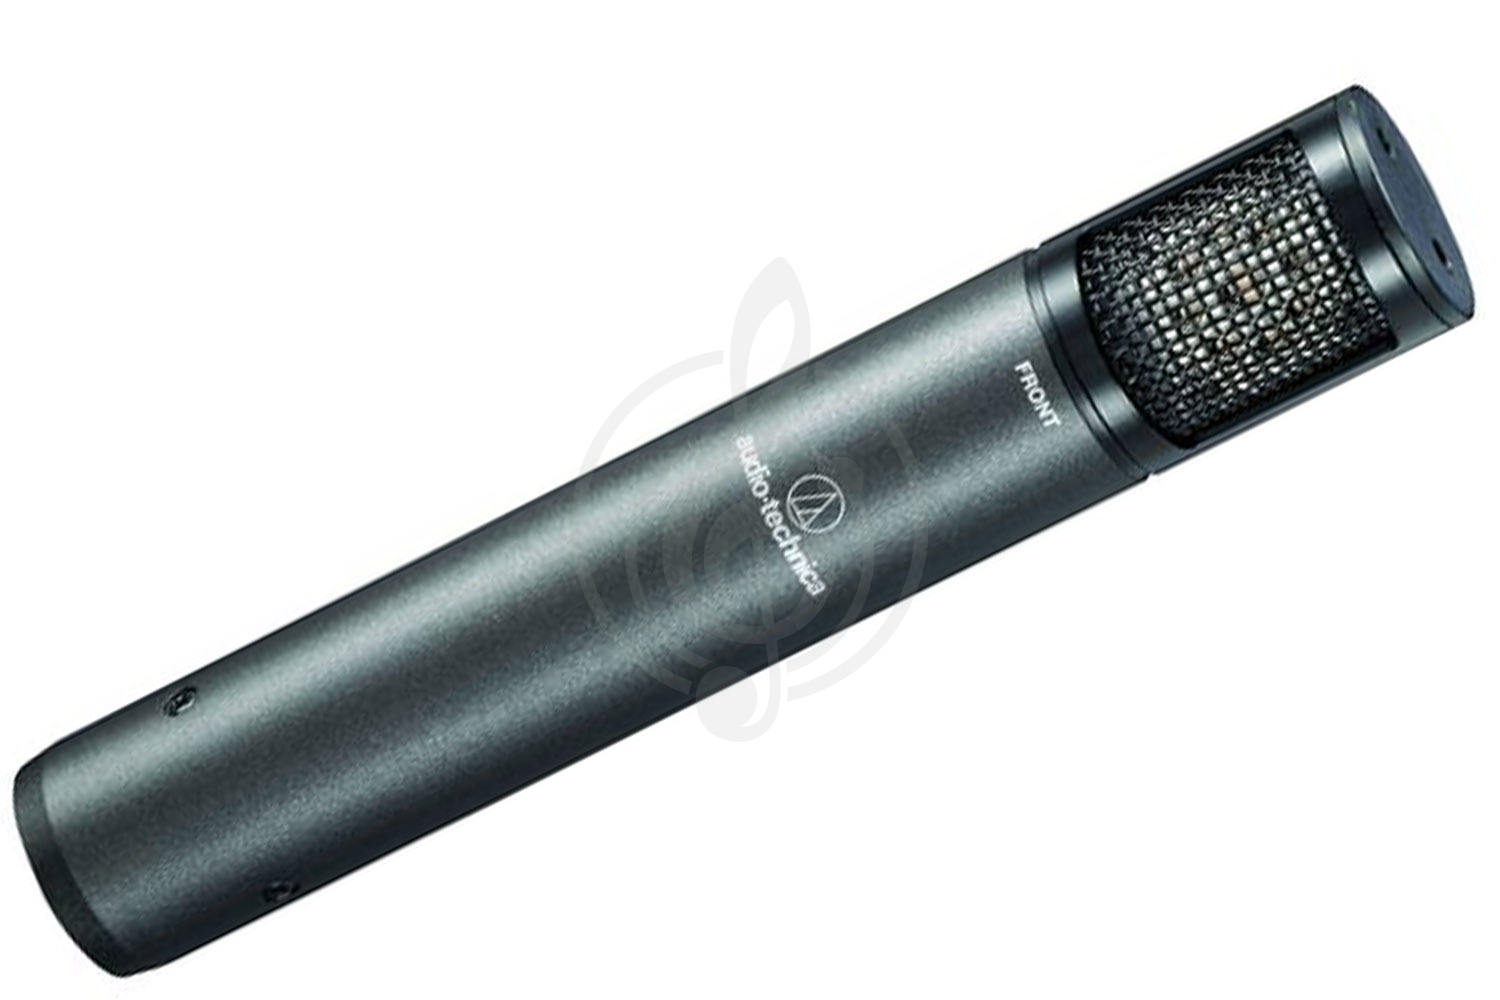 Инструментальный микрофон Инструментальные микрофоны AUDIO-TECHNICA Audio-Technica ATM450 - Микрофон инструментальный конденсаторный ATM450 - фото 1